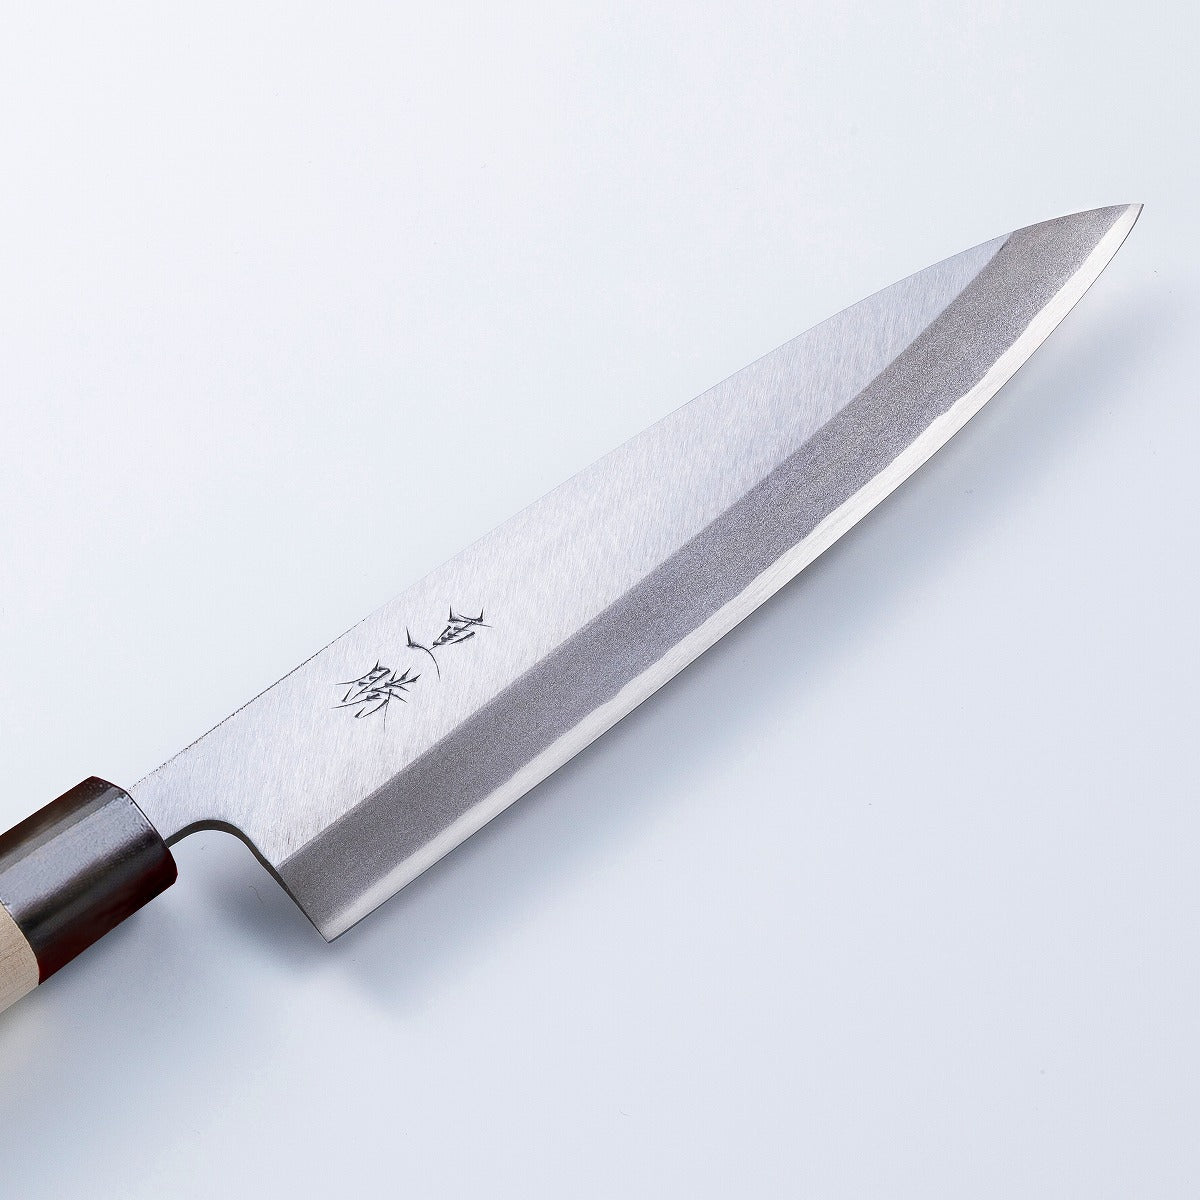 HONMAMON "SAKAI SHIGEKATSU" Mioroshi Deba (Butcher Knife) SK Steel, 210mm